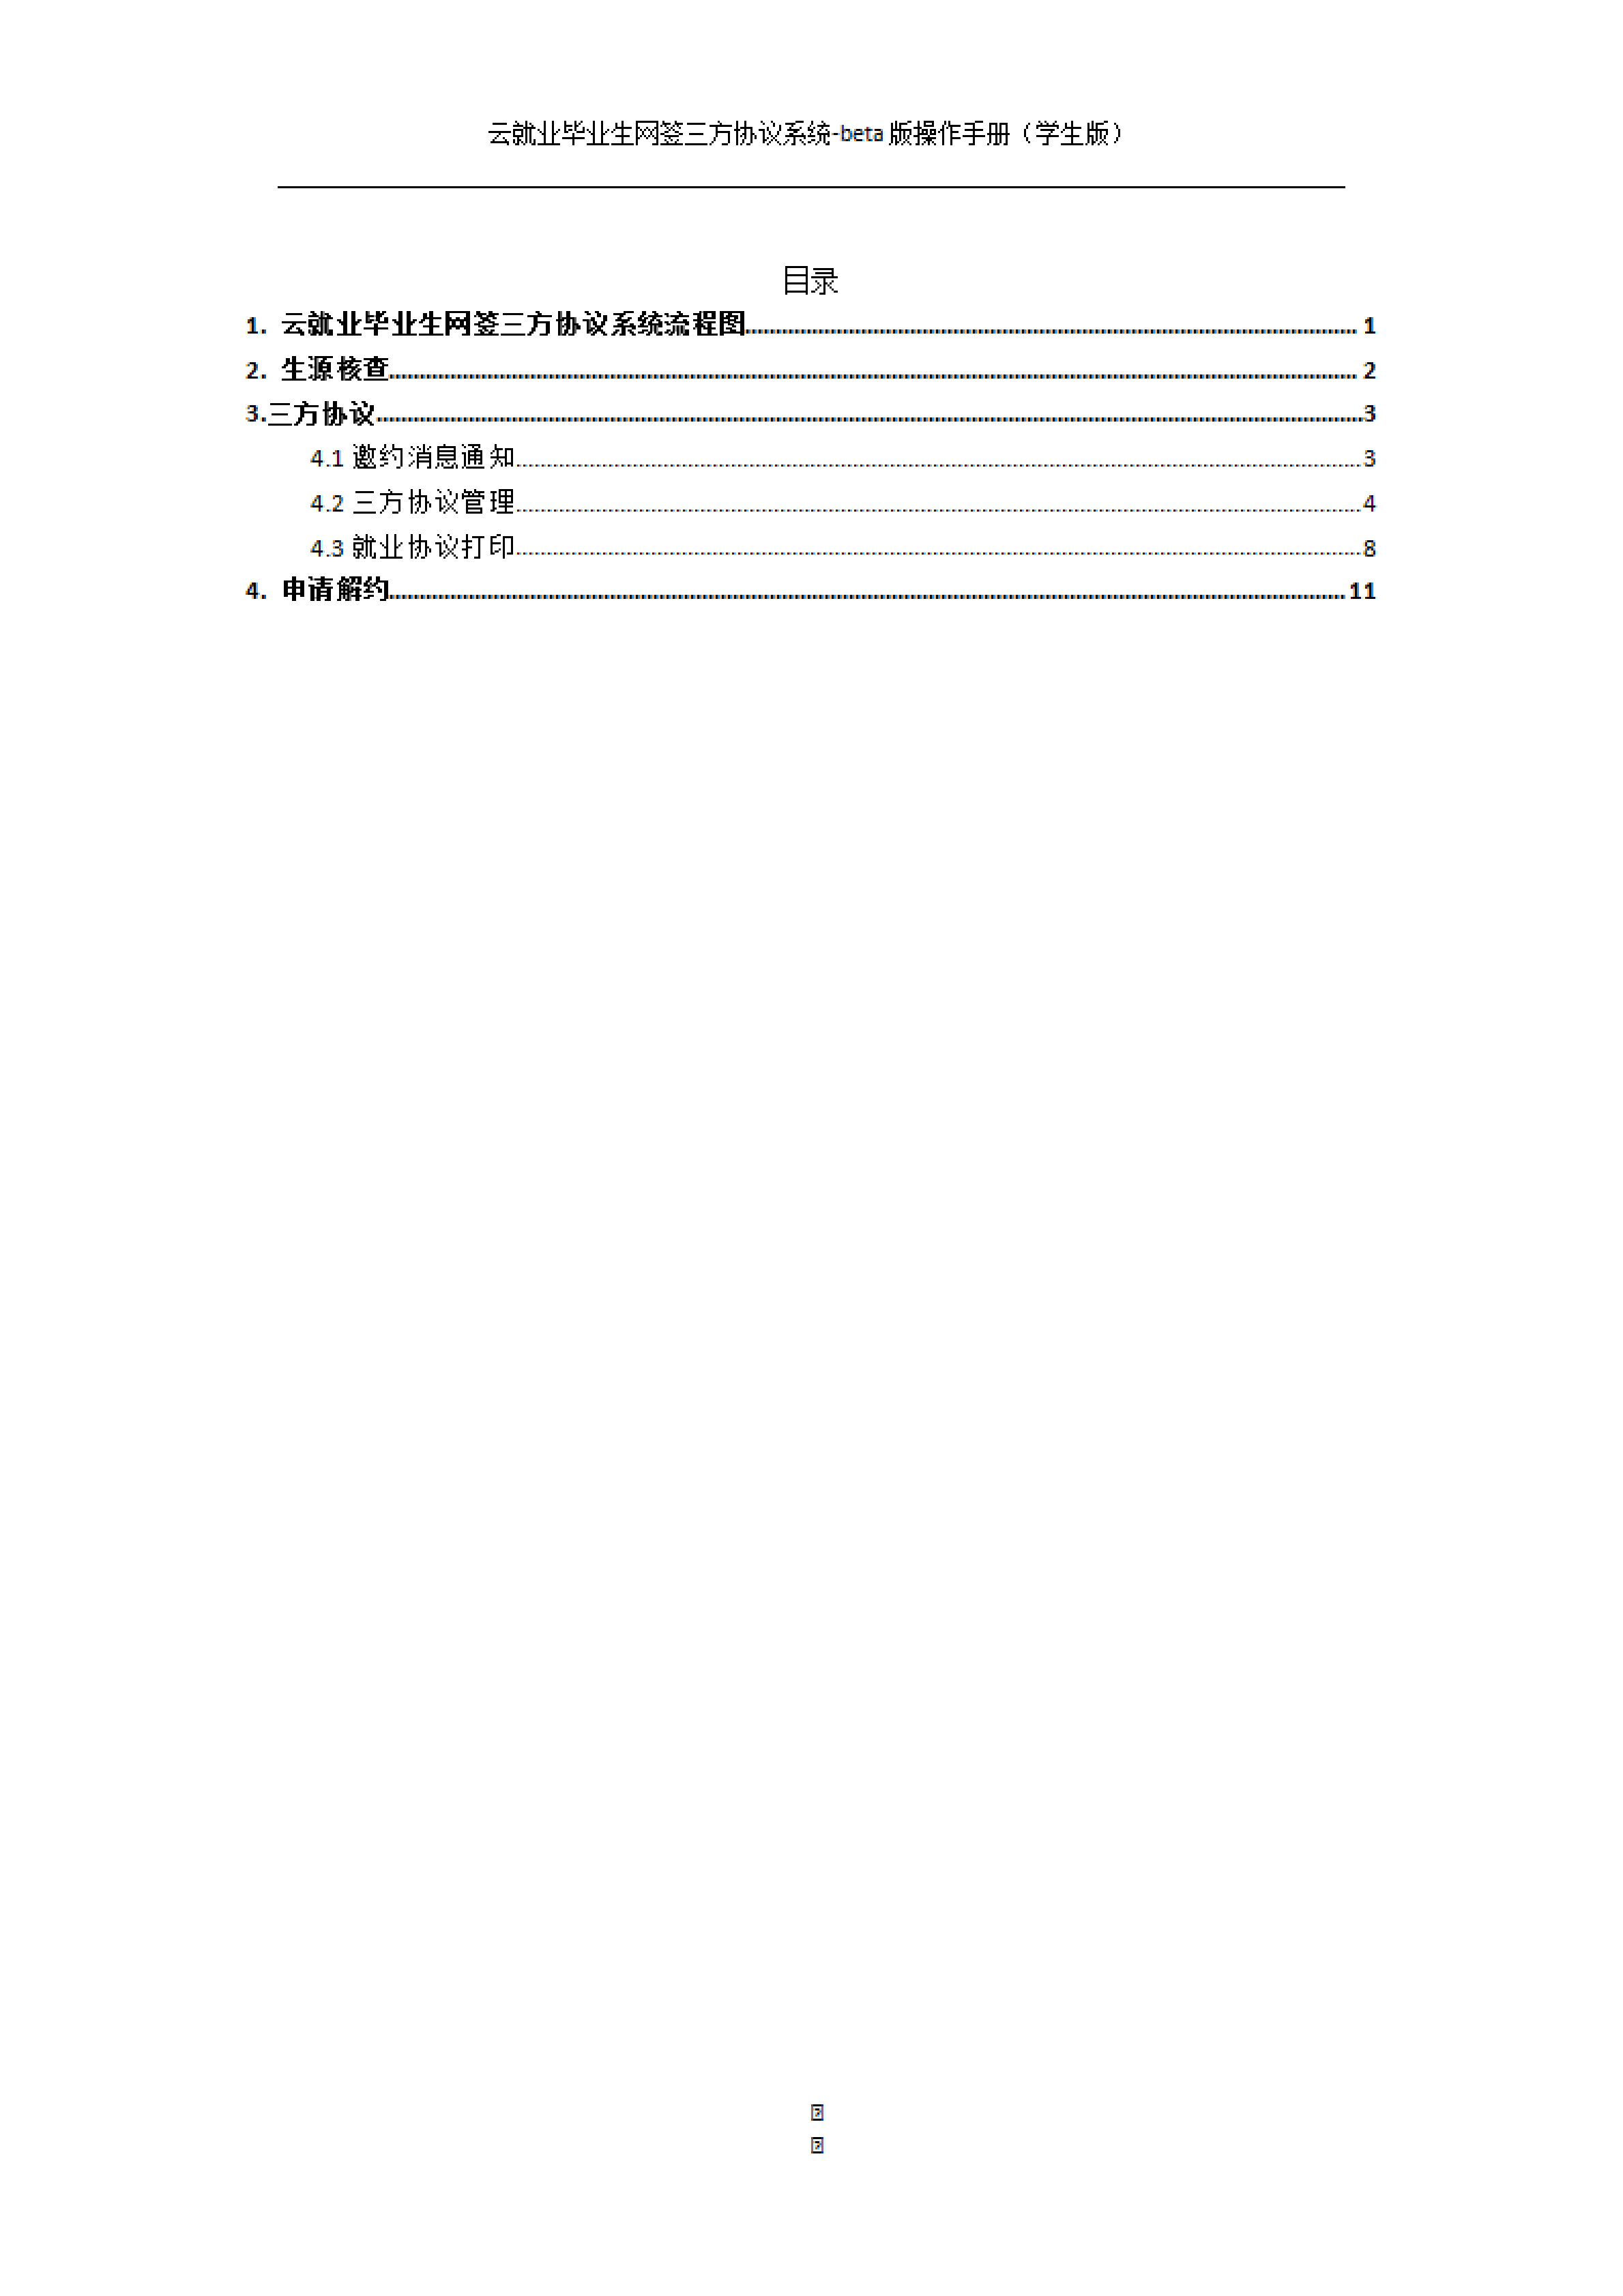 附件4：云就业毕业生网上签约系统操作手册（学生版）_01.png